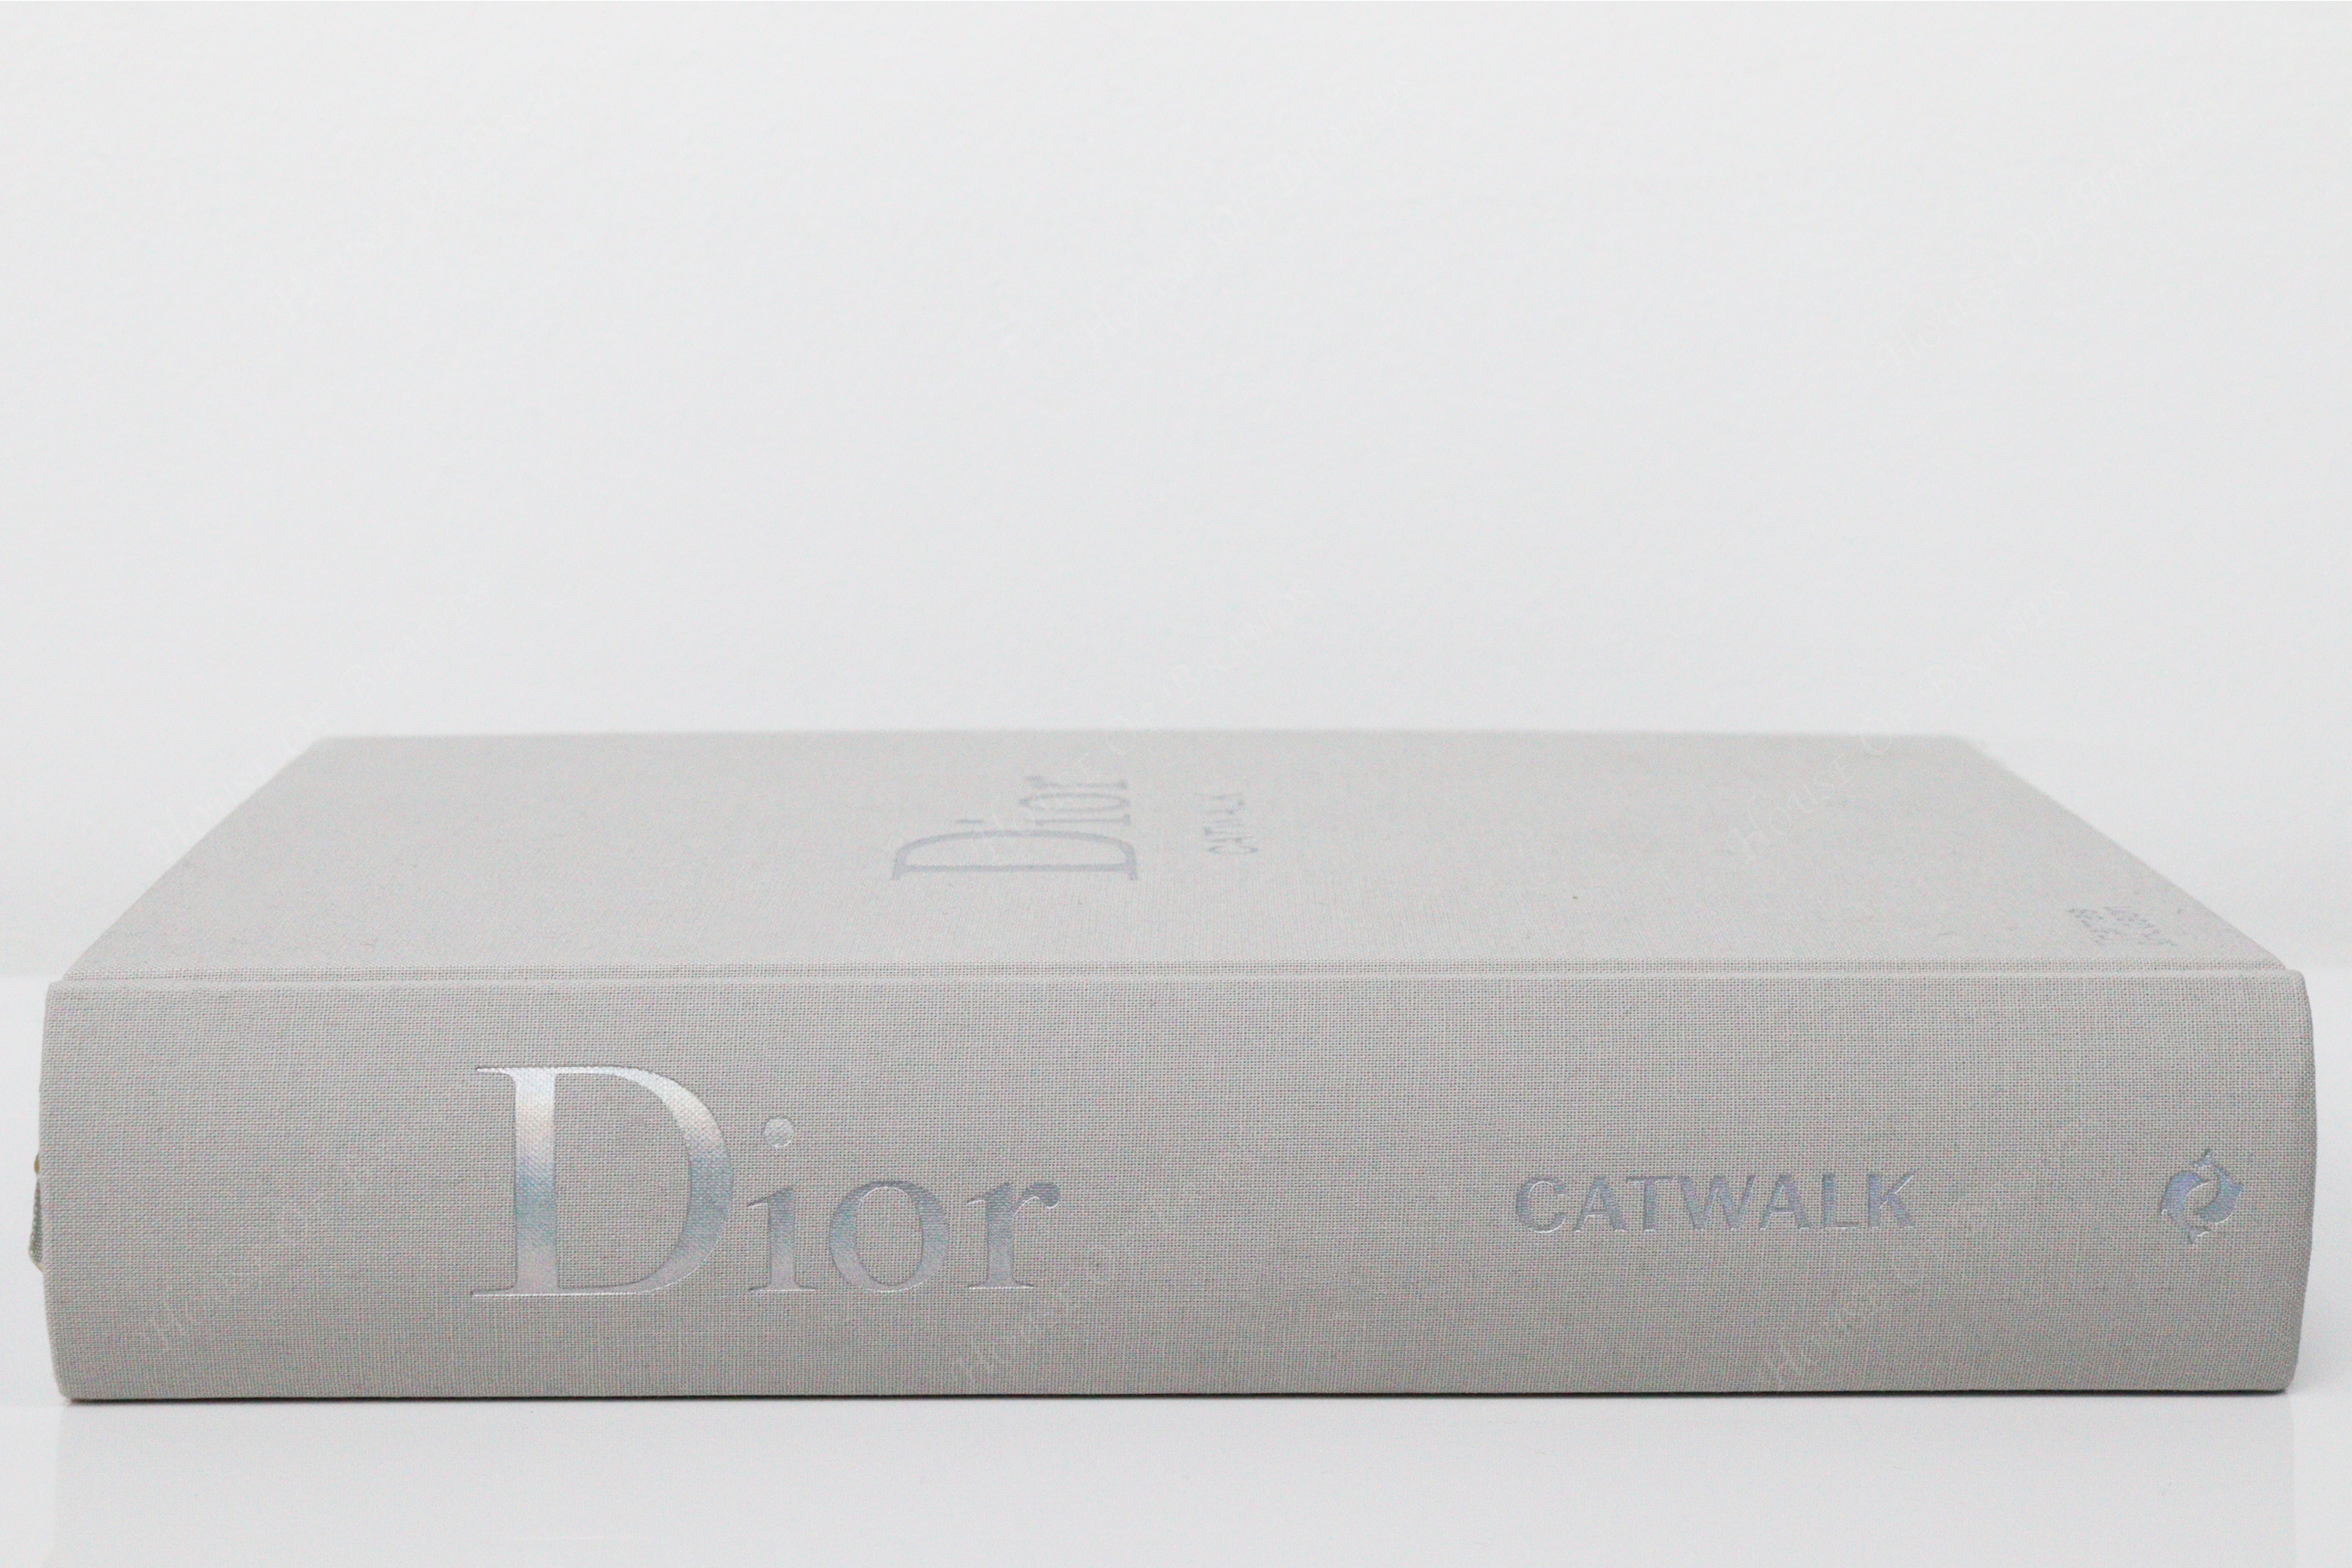 Book Dior Catwalk